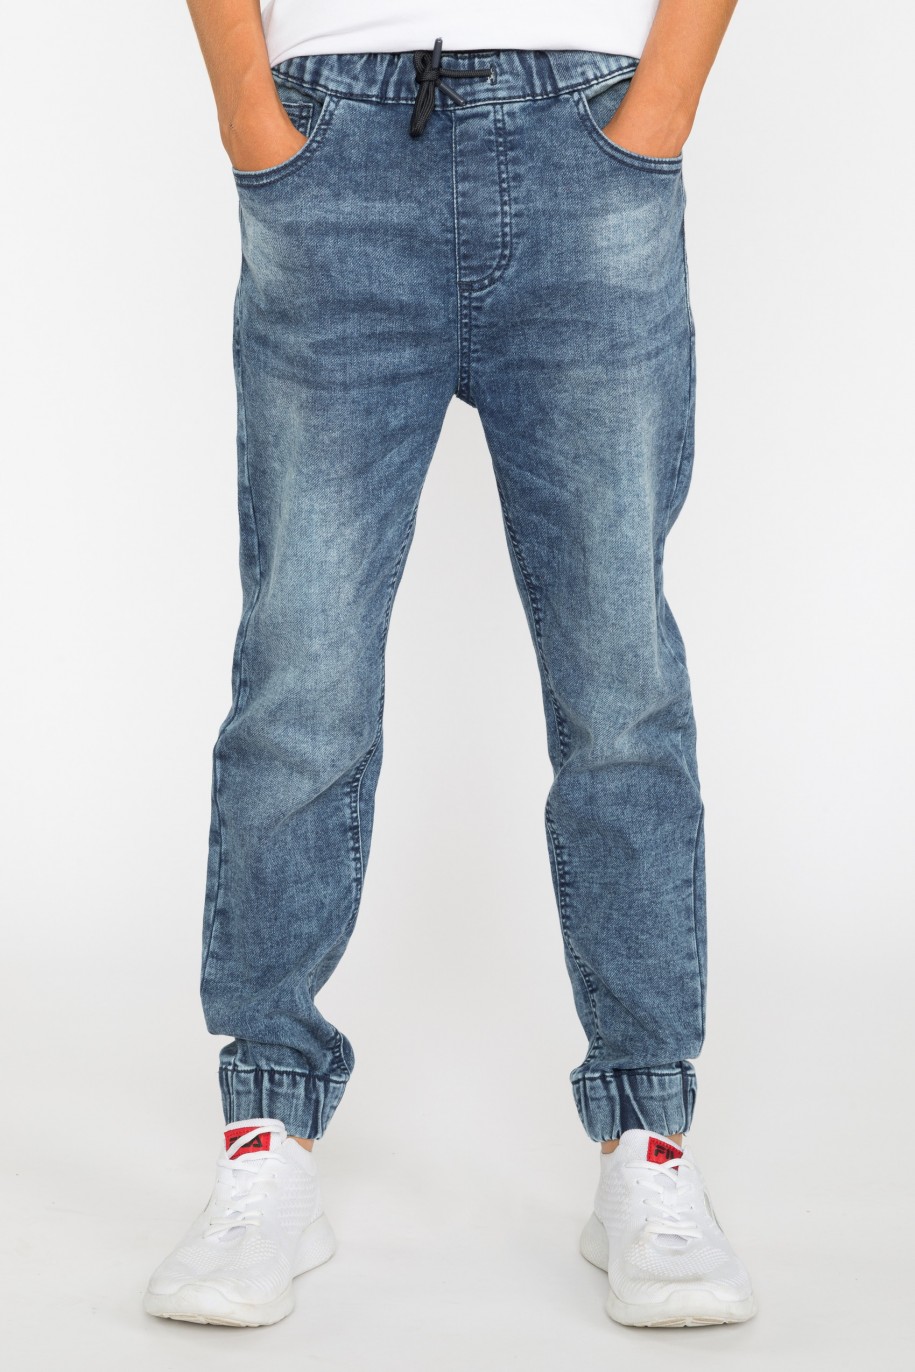 Granatowe jeansowe joggery dla chłopaka - 29327